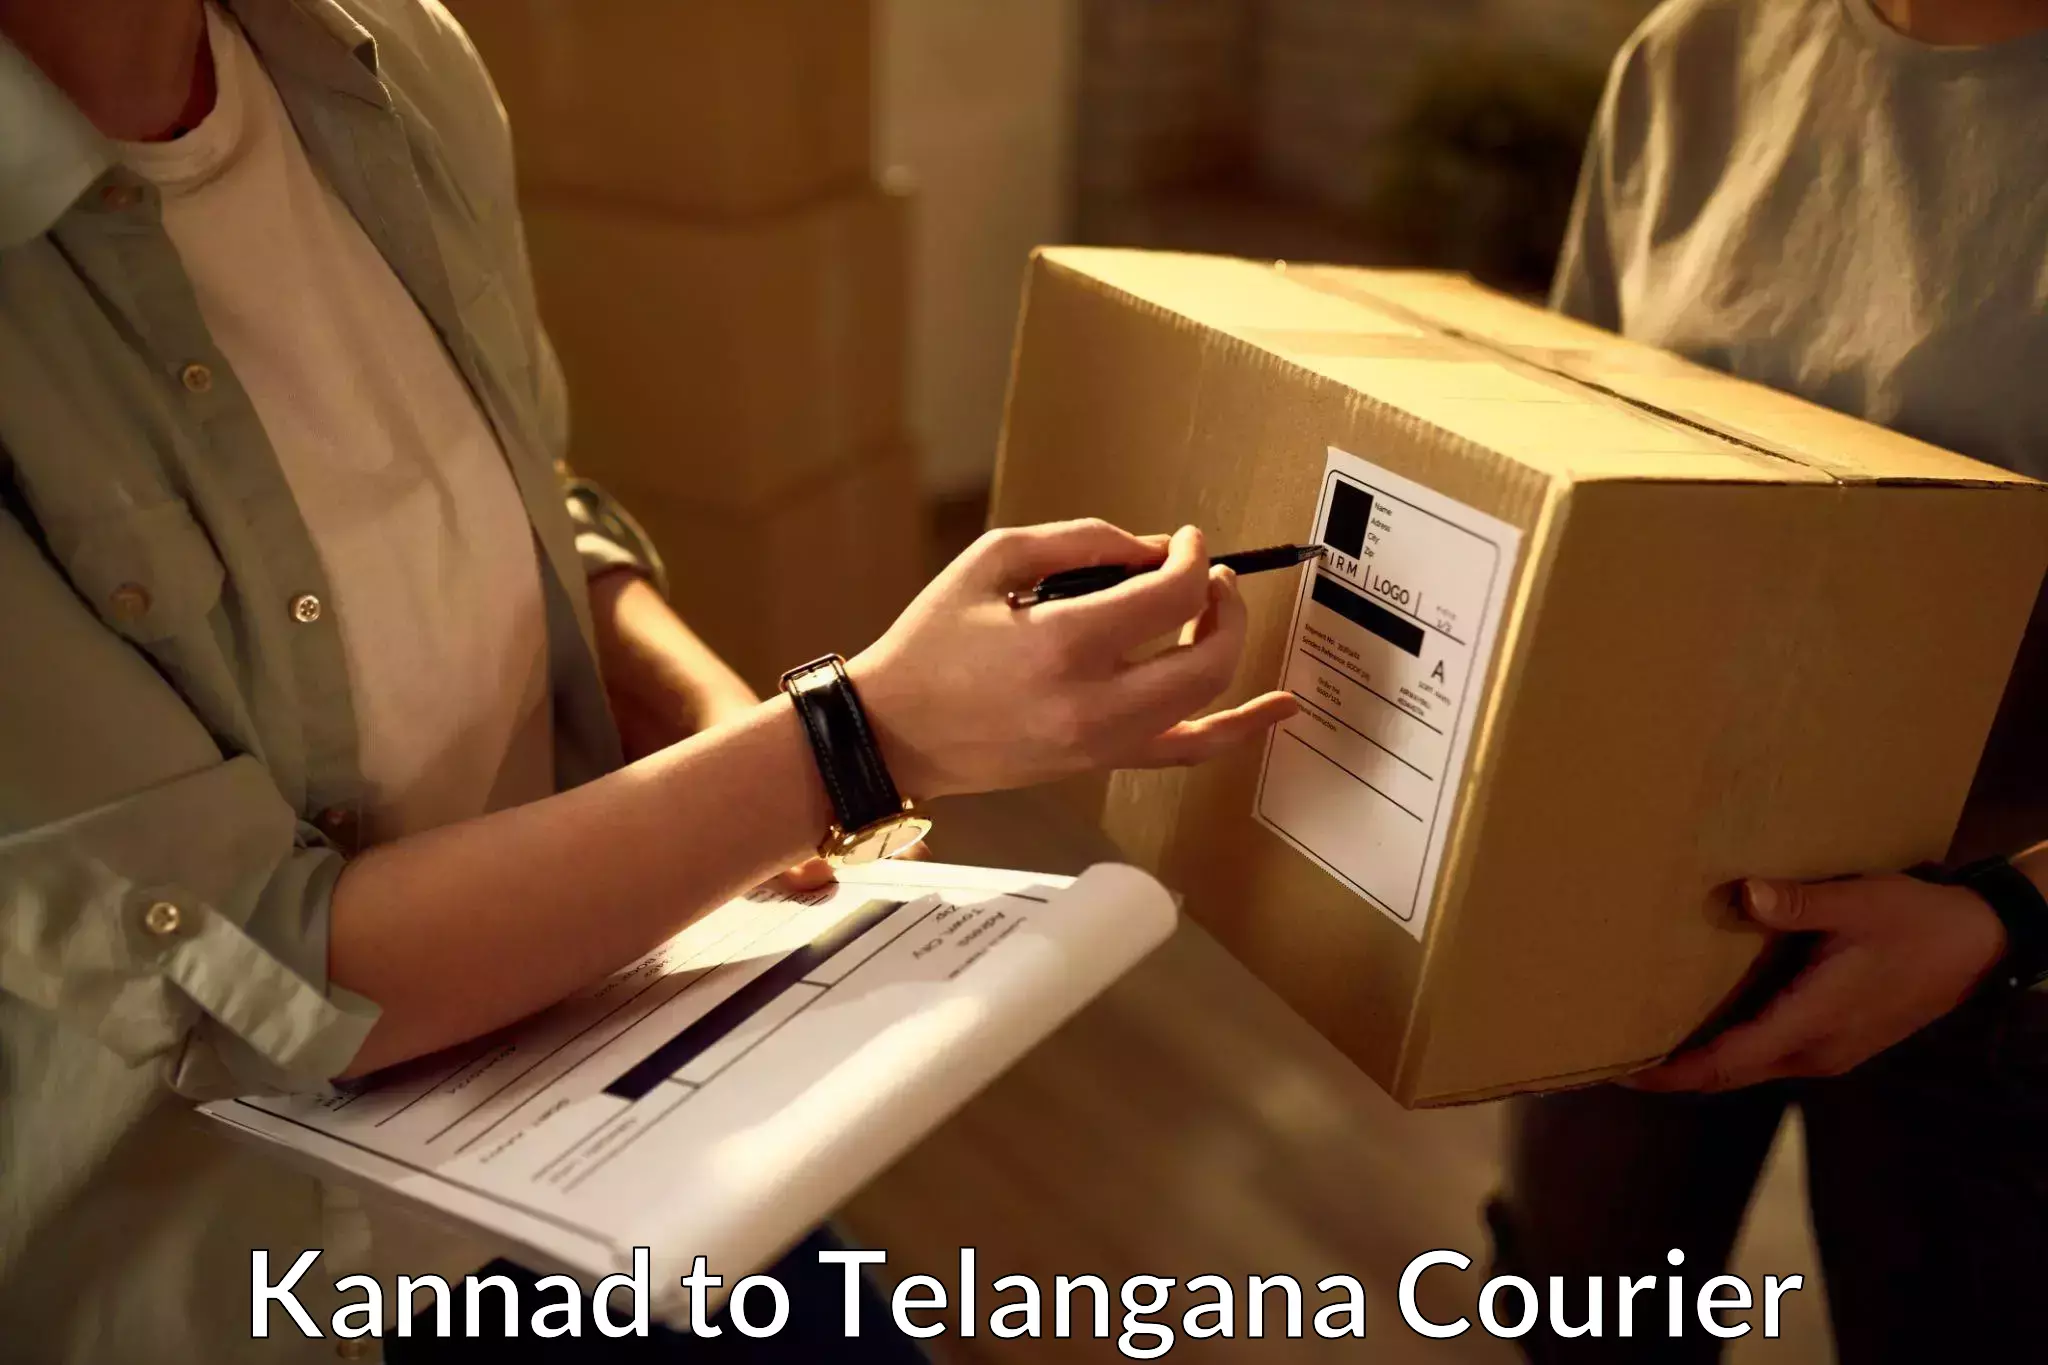 Seamless shipping service Kannad to Netrang